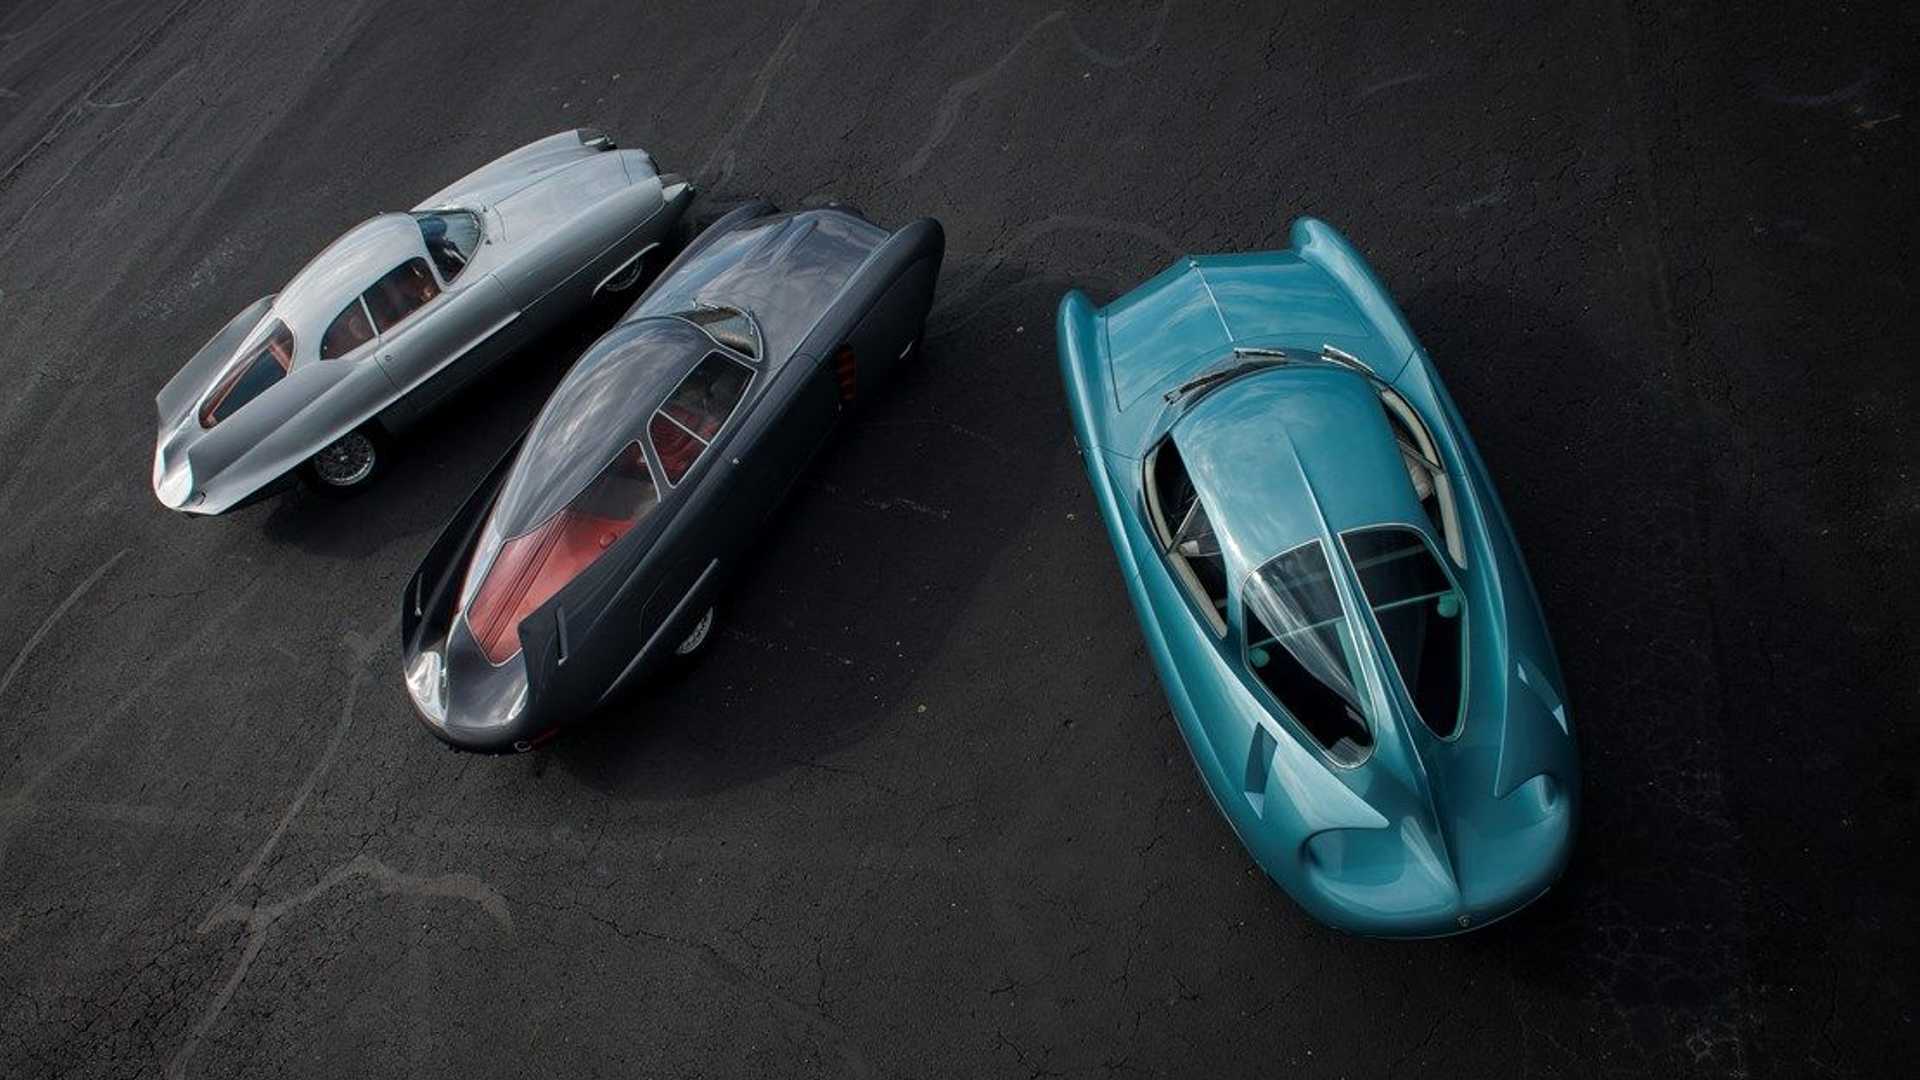 نمای بالا از سه خودروی مفهومی آلفا رومئو / Alfa Romeo B.A.T. Concept Car با رنگ های آبی و سفید